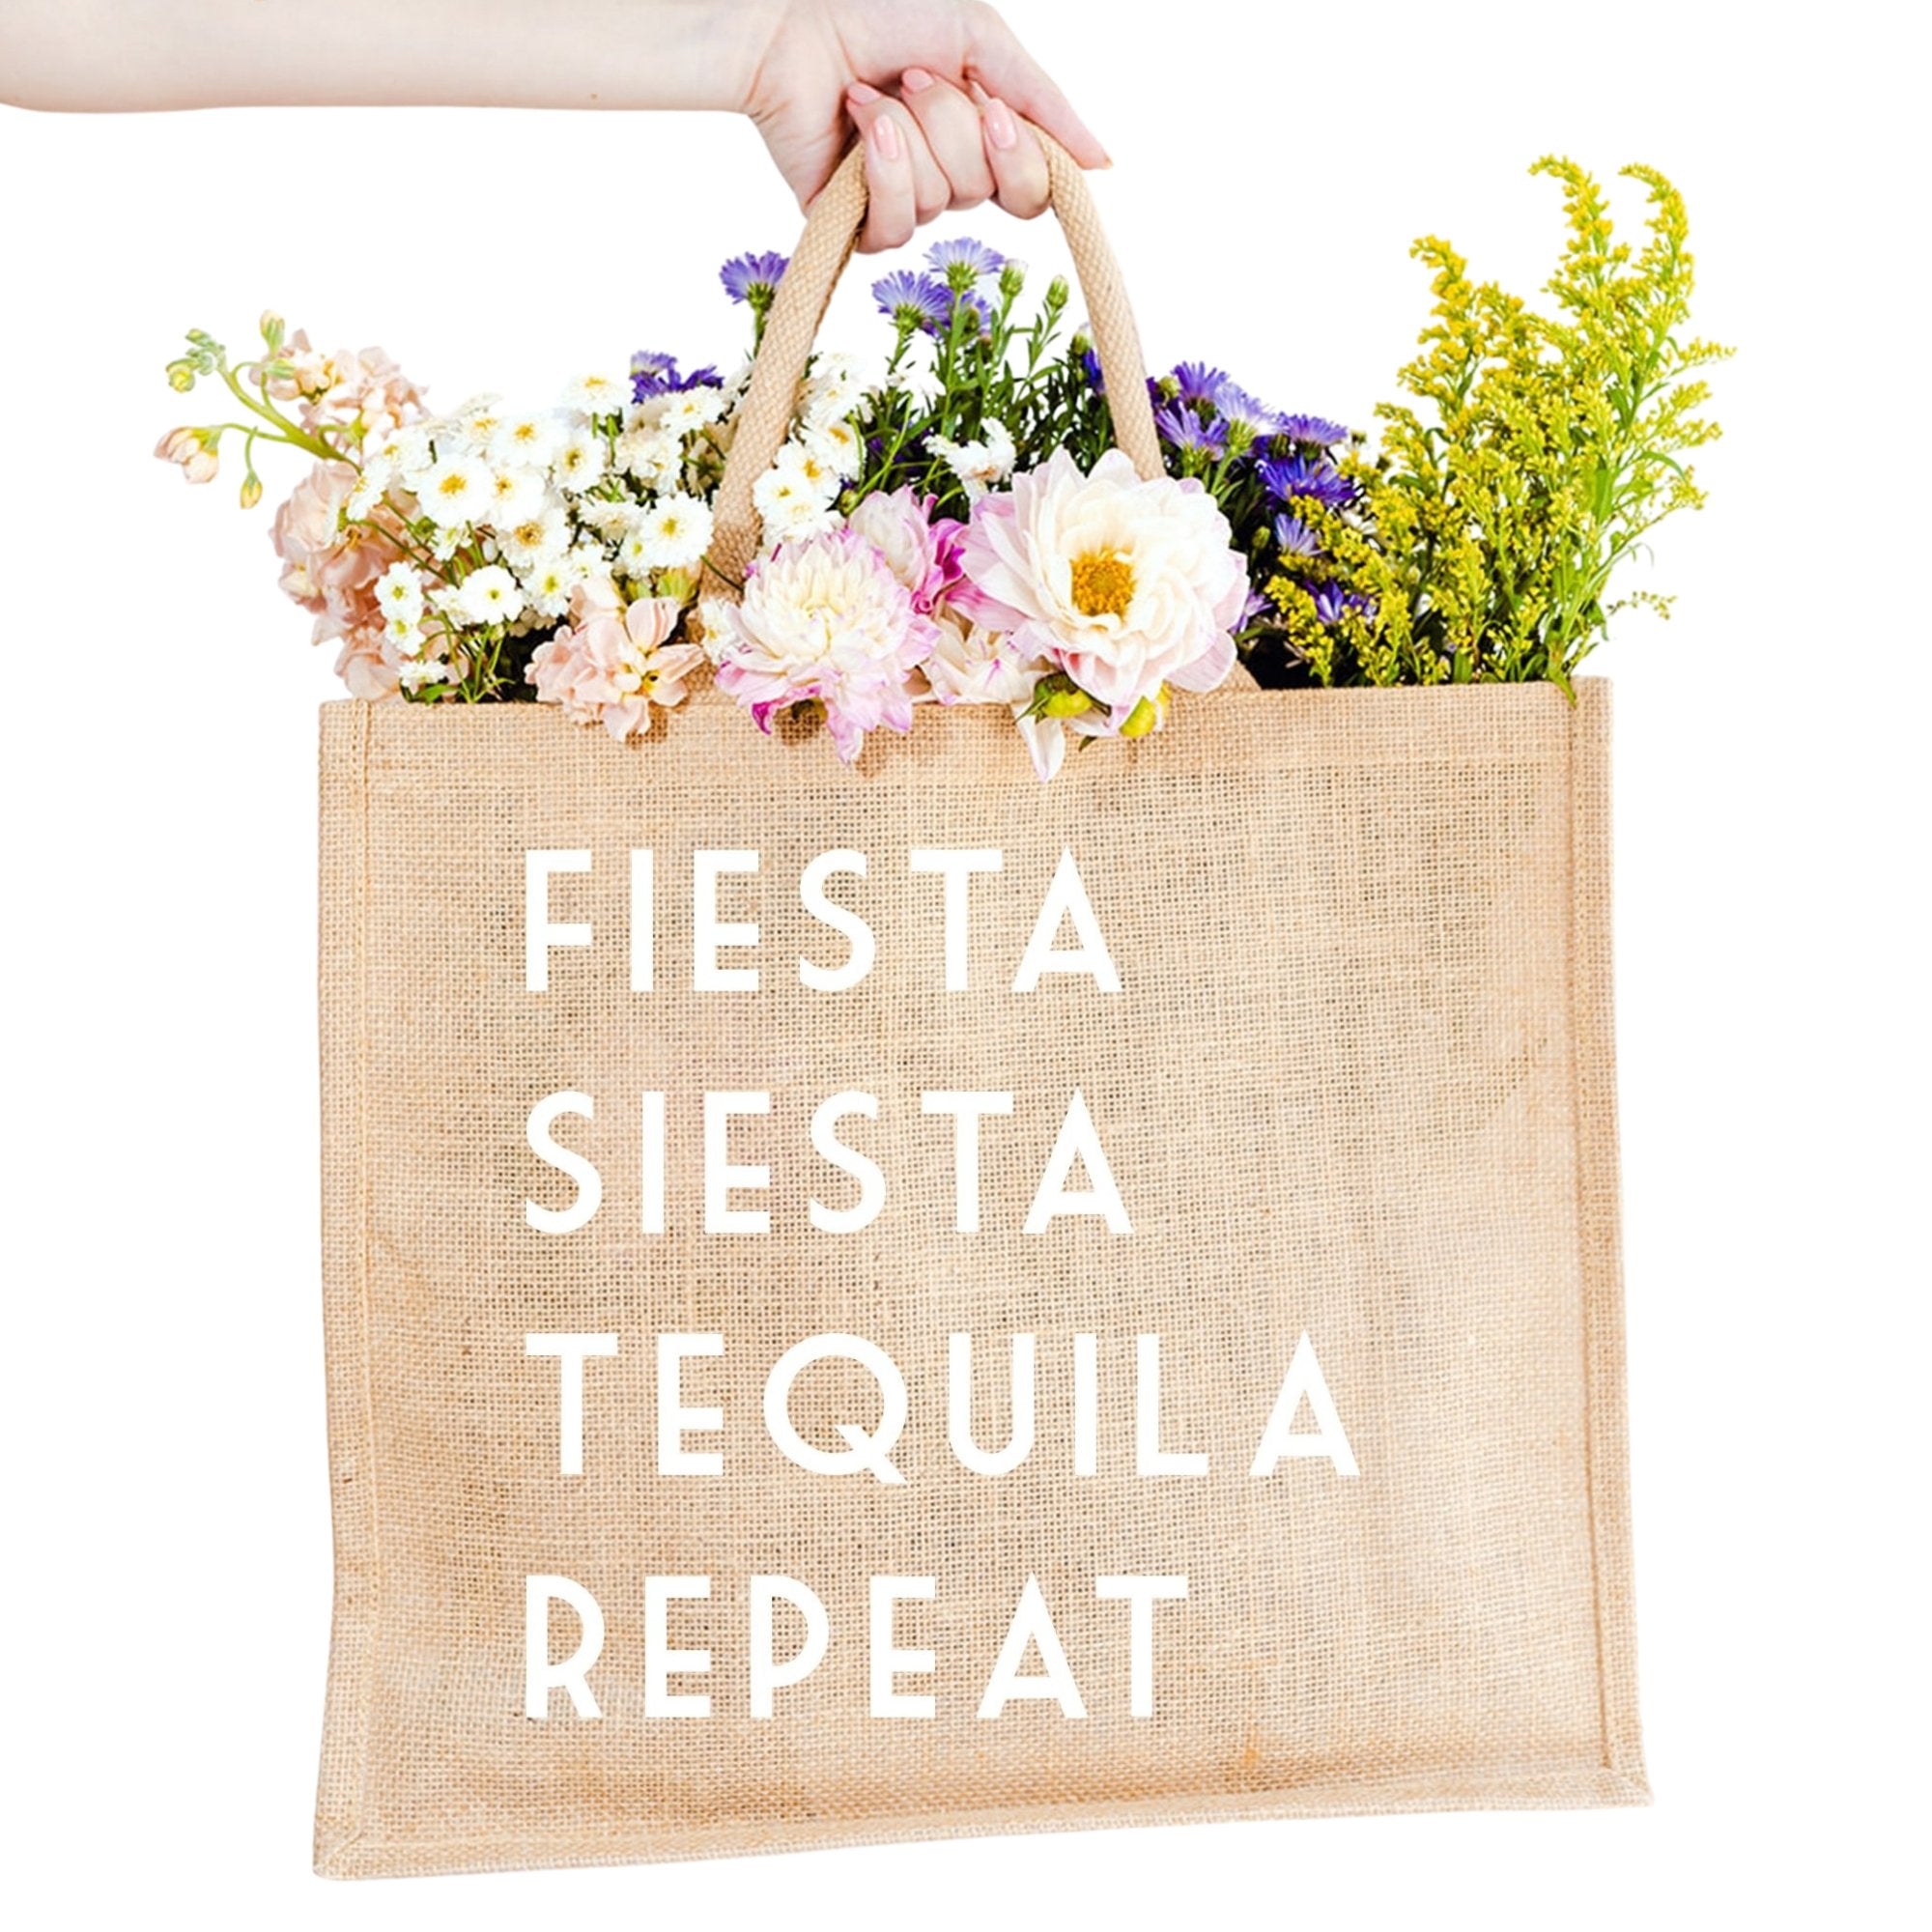 Fiesta Siesta Tequila Repeat Jute Carryall